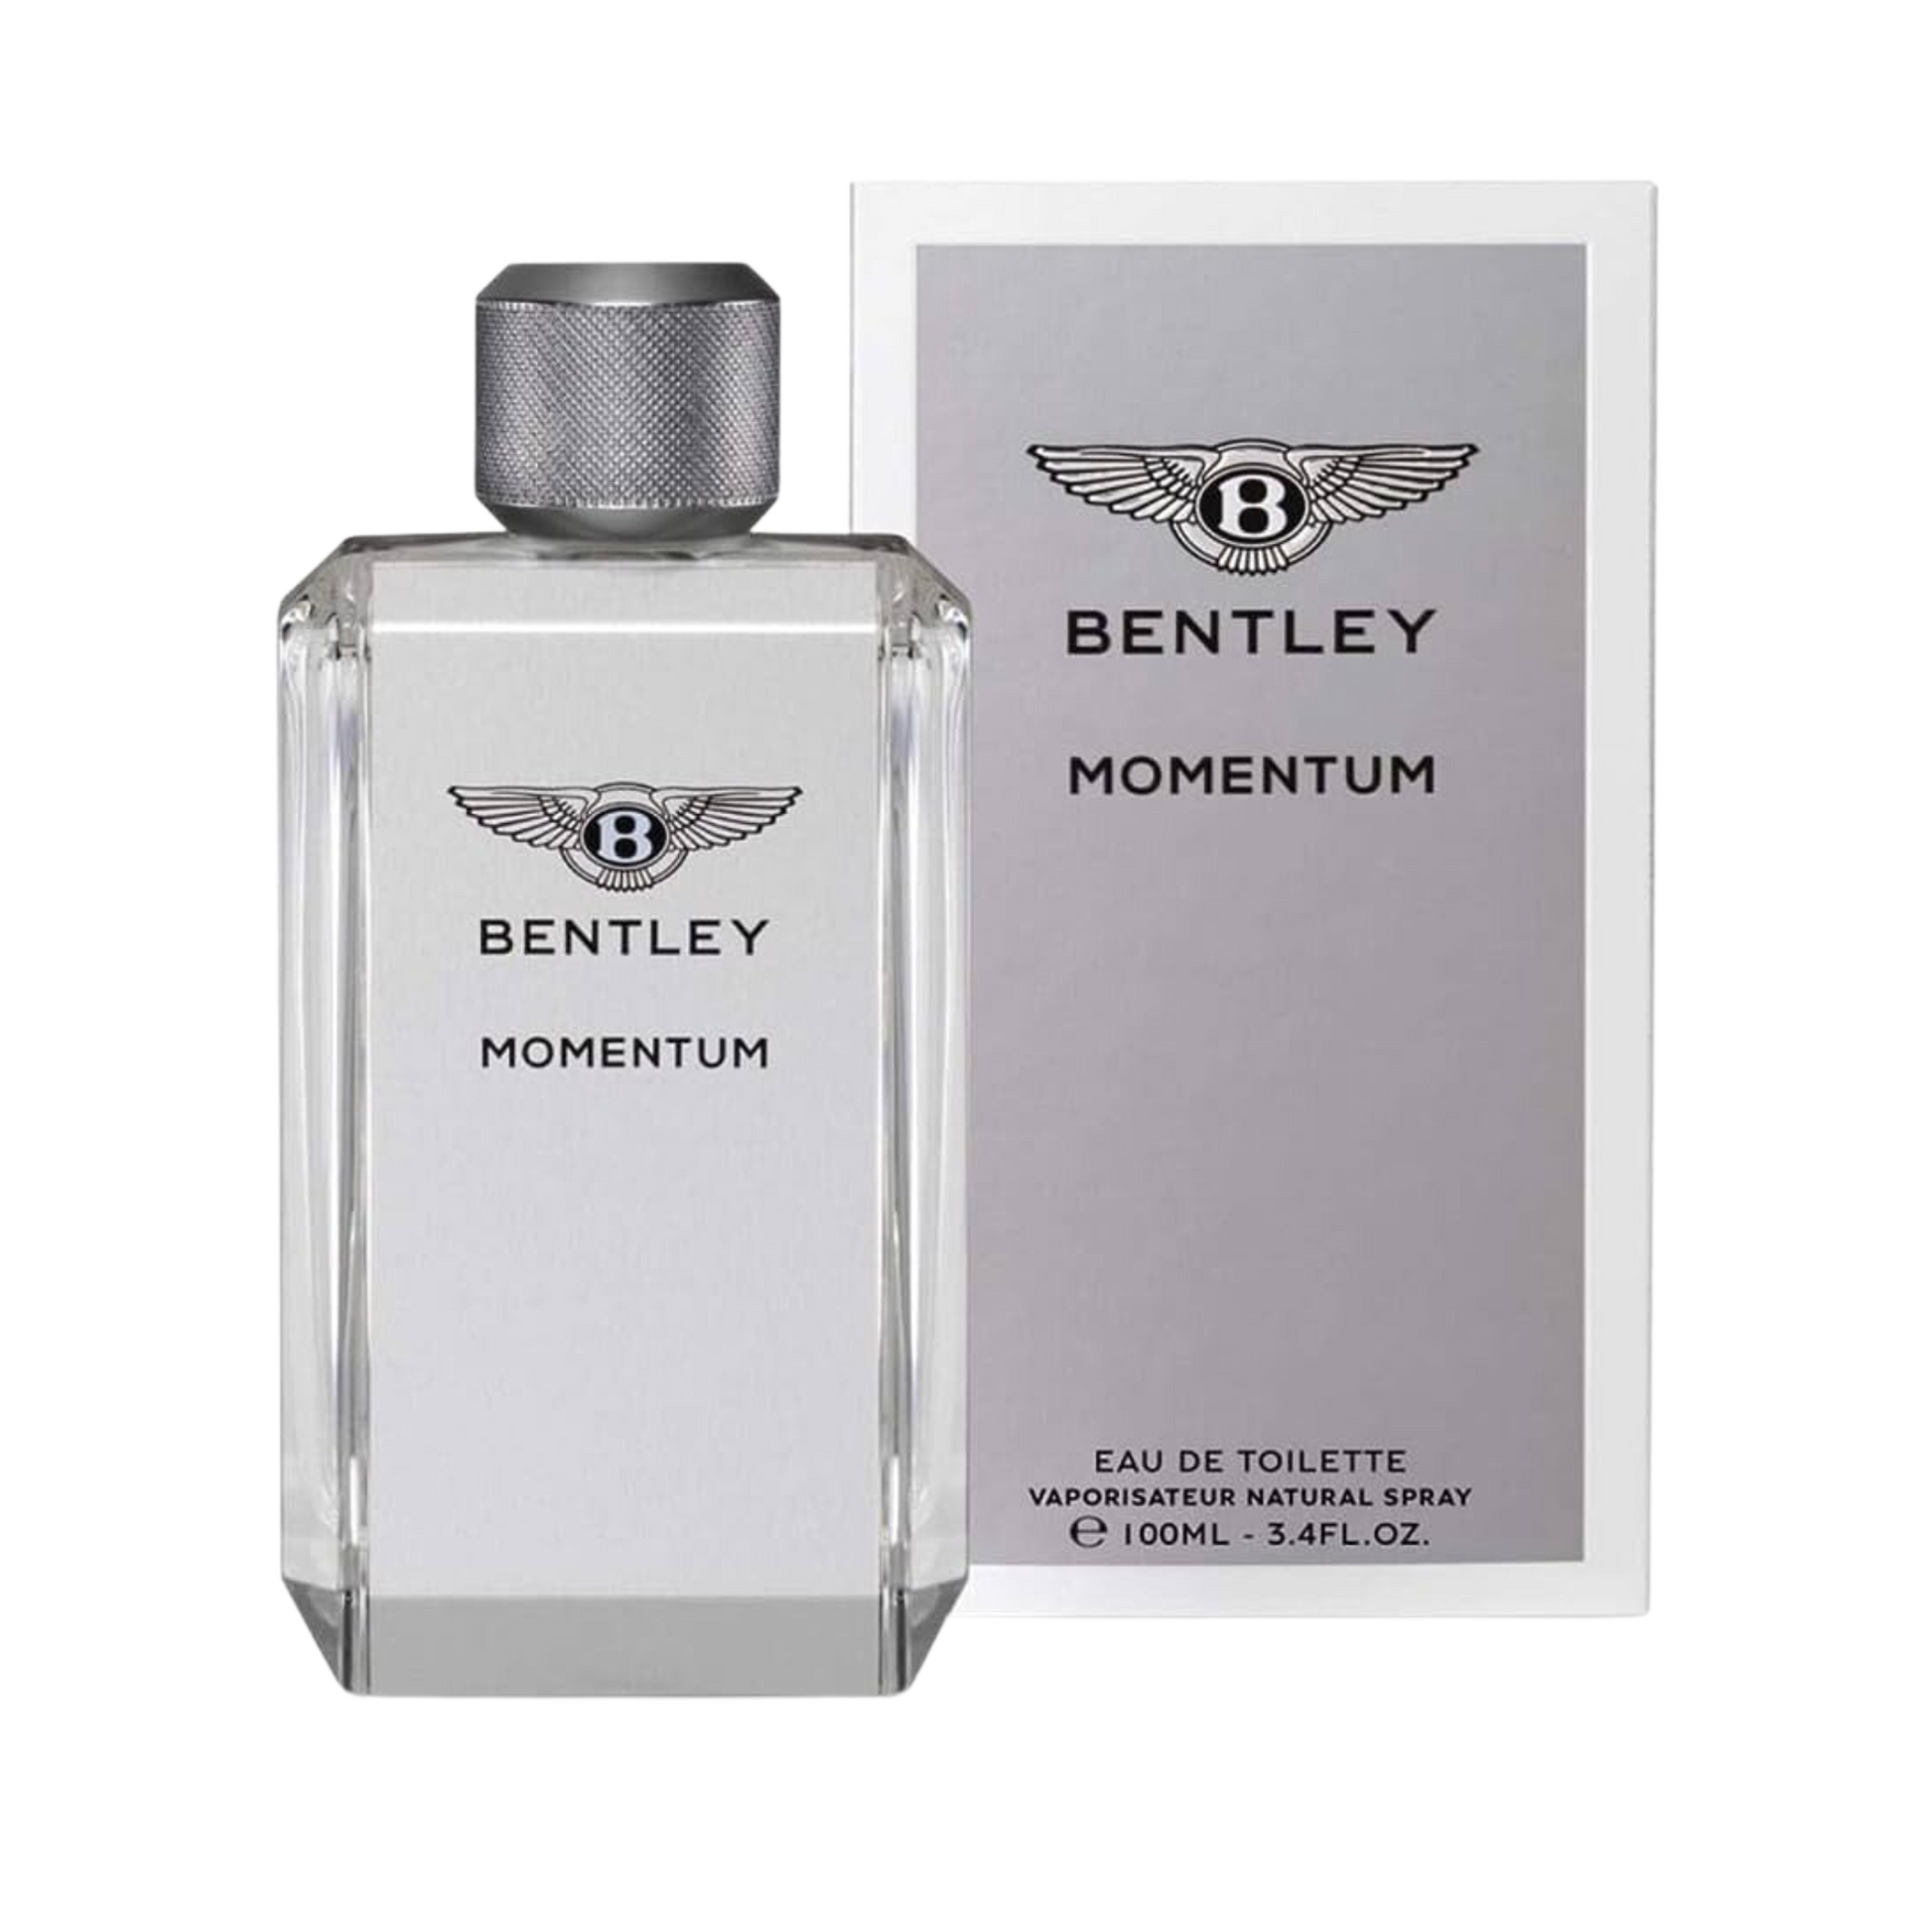 Bentley Intense by Bentley 3.4 oz EDP for Men